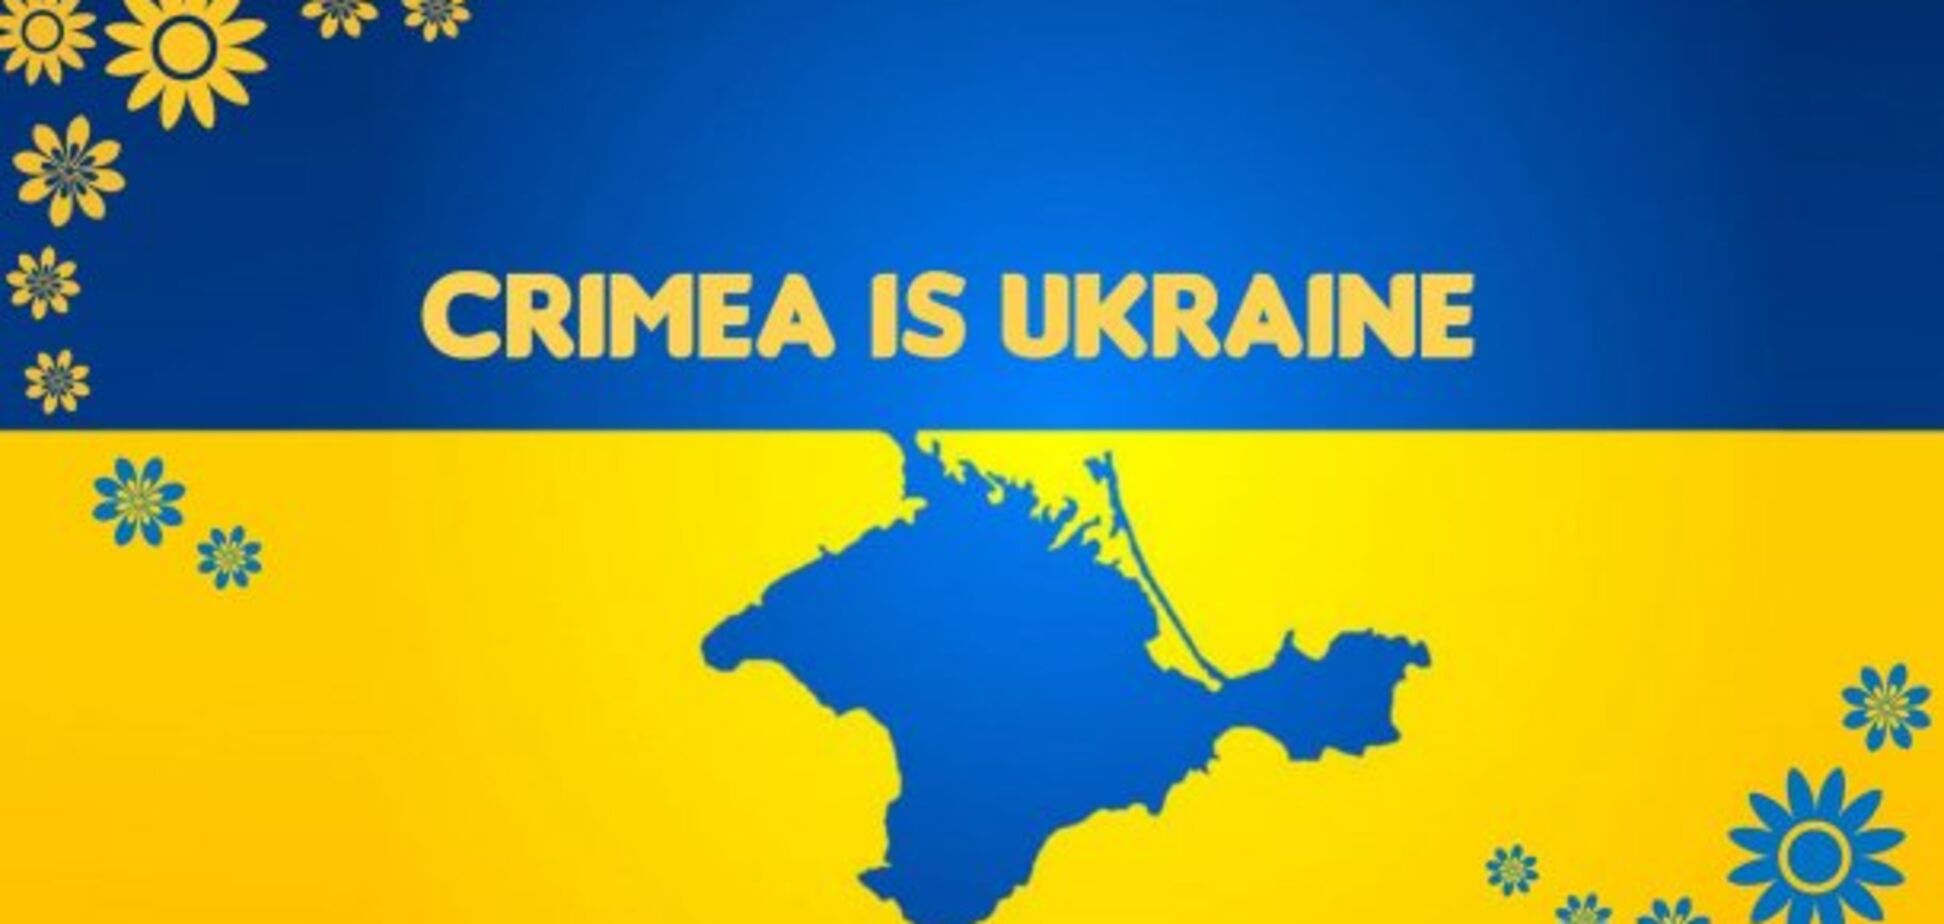 Крым 